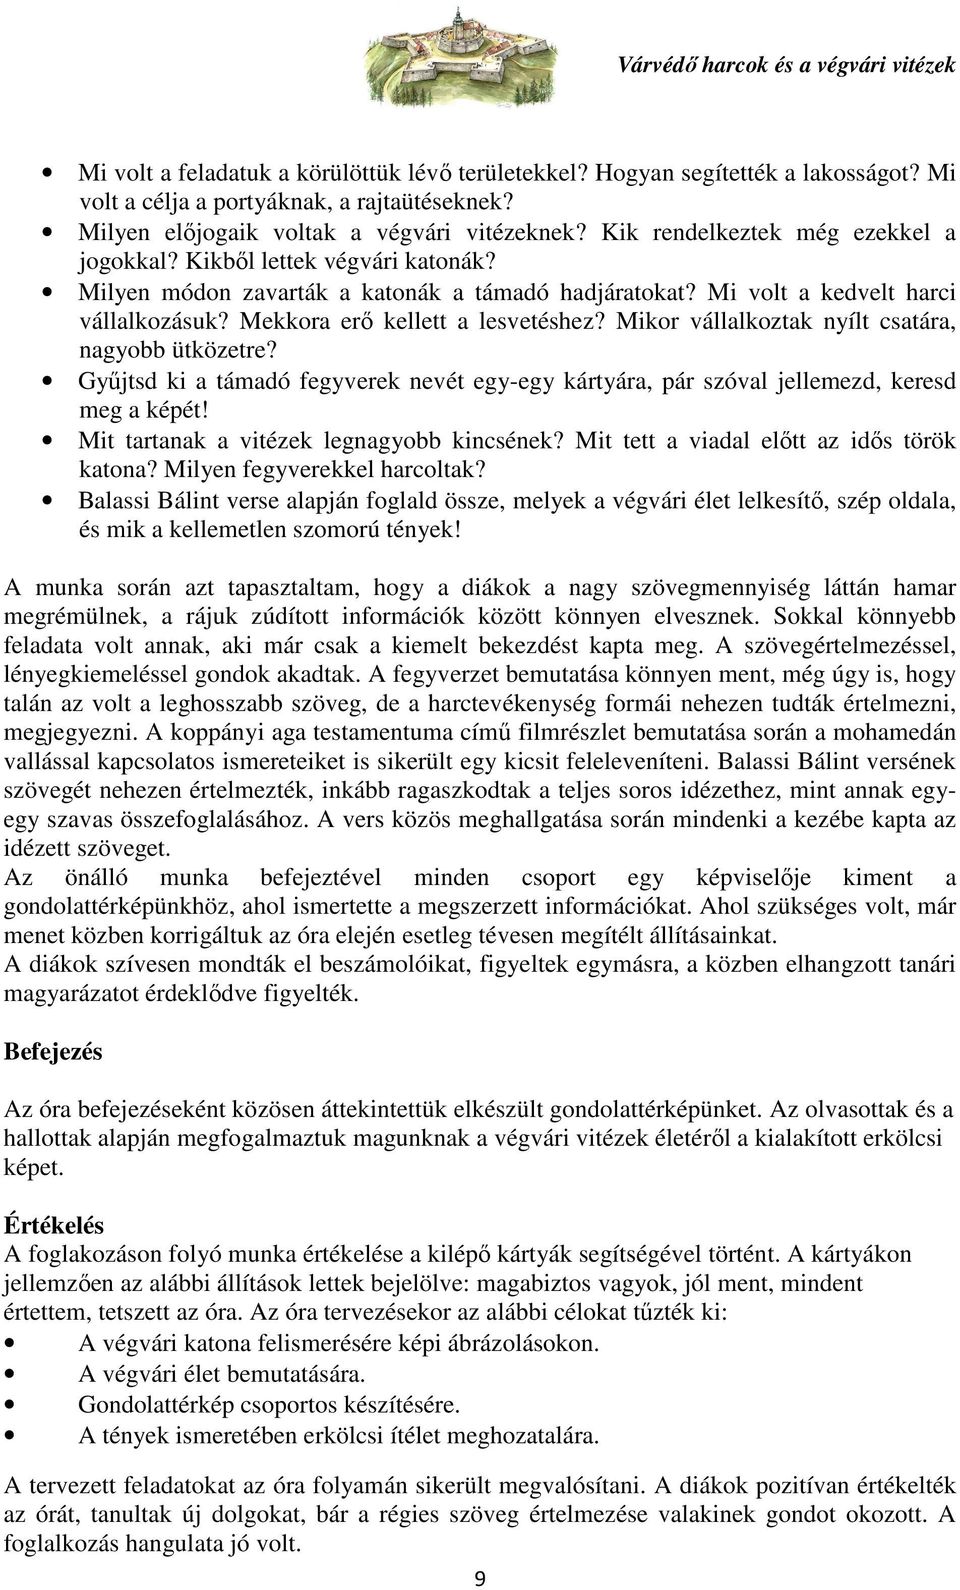 Összeállította: Horváthné Ruzsa Anita PDF Free Download